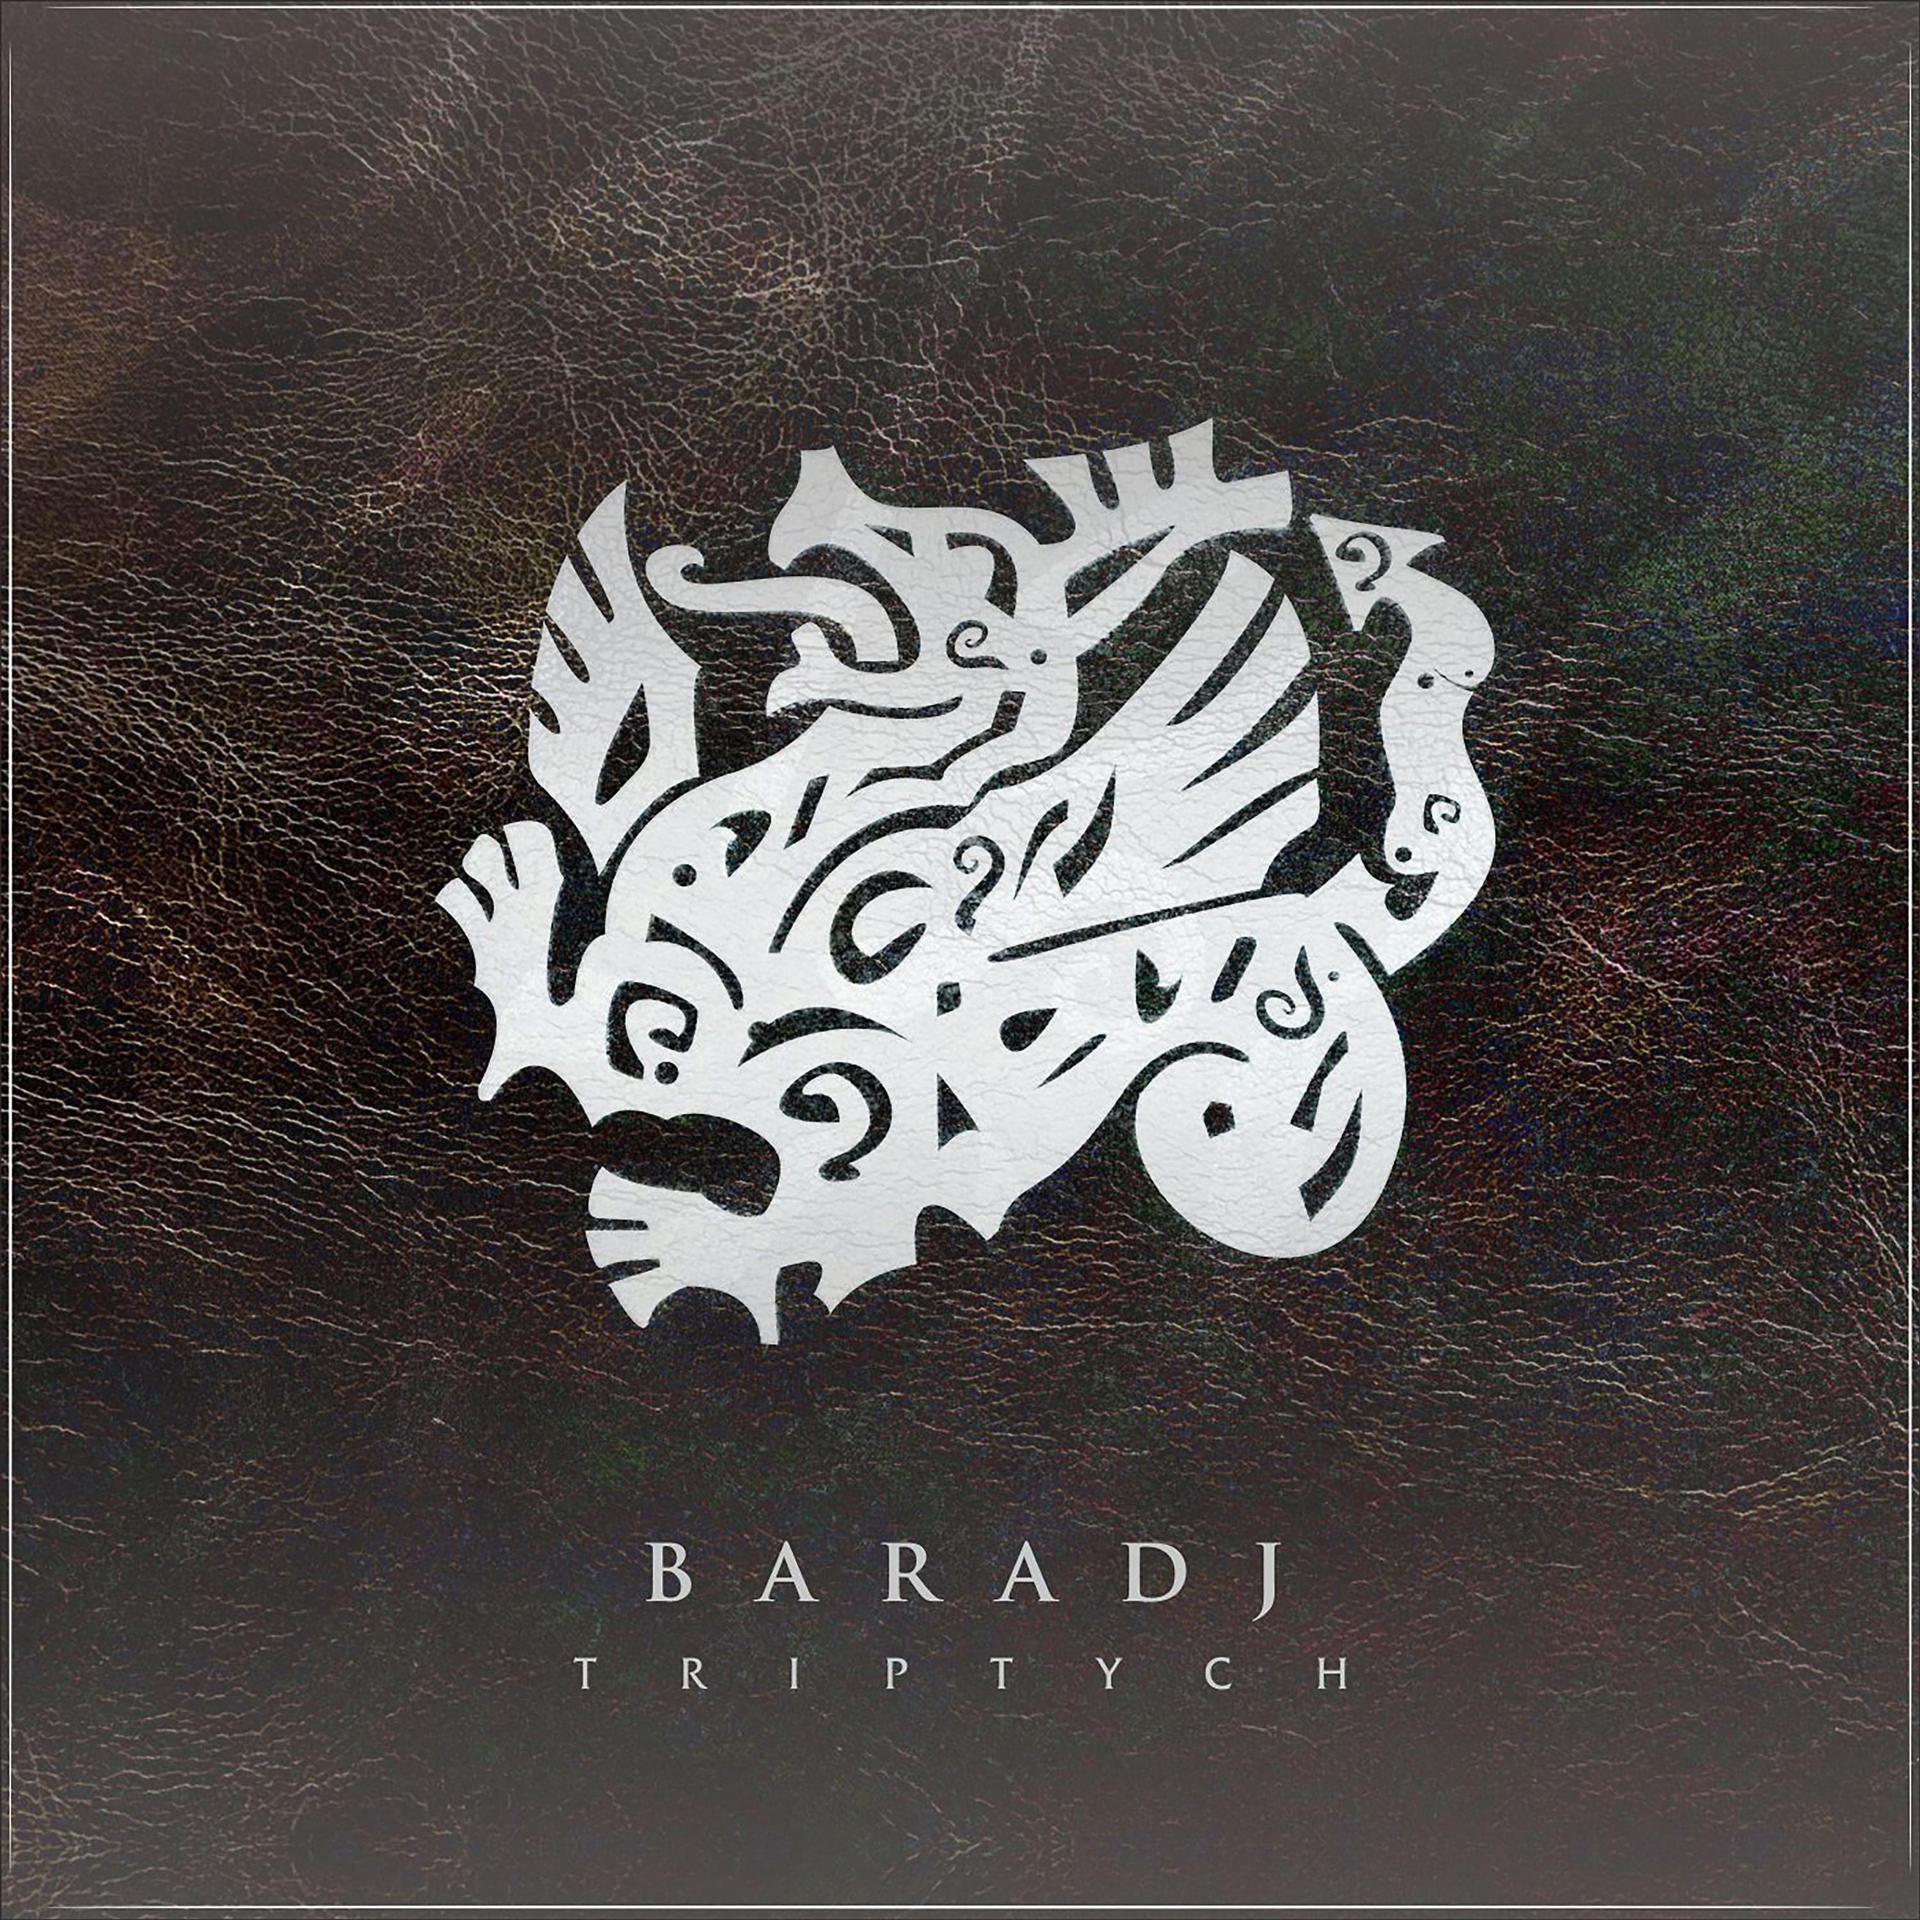 Постер к треку Baradj - Bars